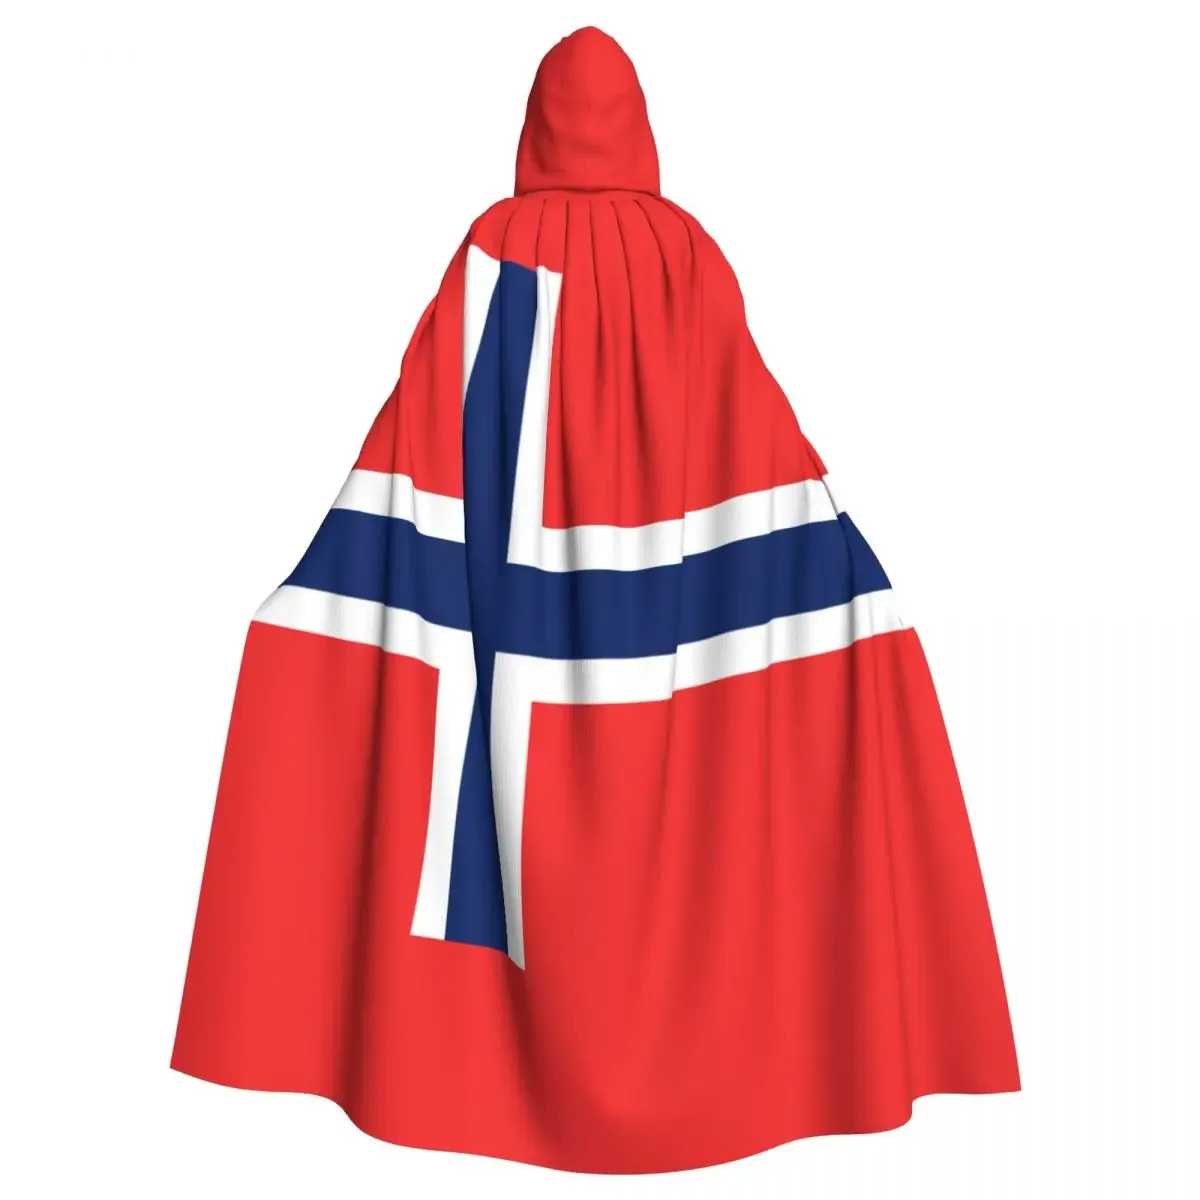 

Унисекс флаг Норвегии плащ с капюшоном длинный костюм ведьмы косплей